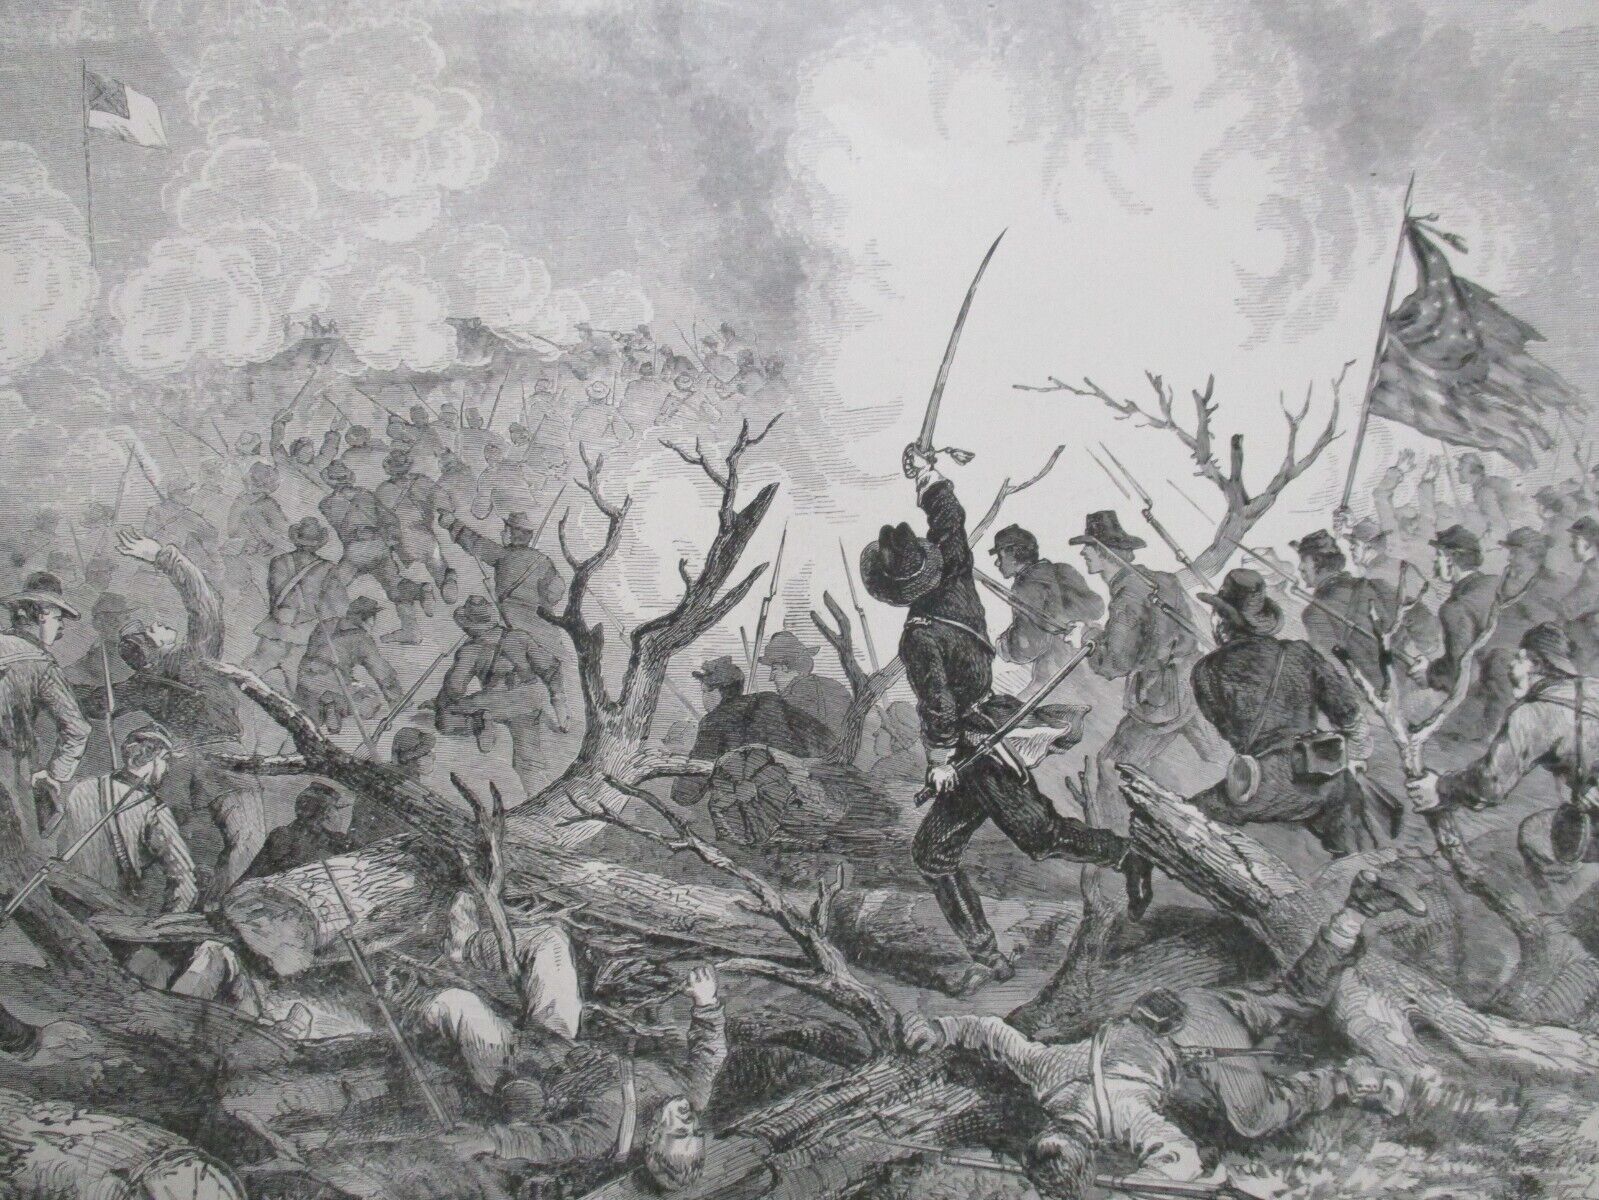 1885 Civil War Print - Federal Troops Attack Confederates at Fort De Russy, LA